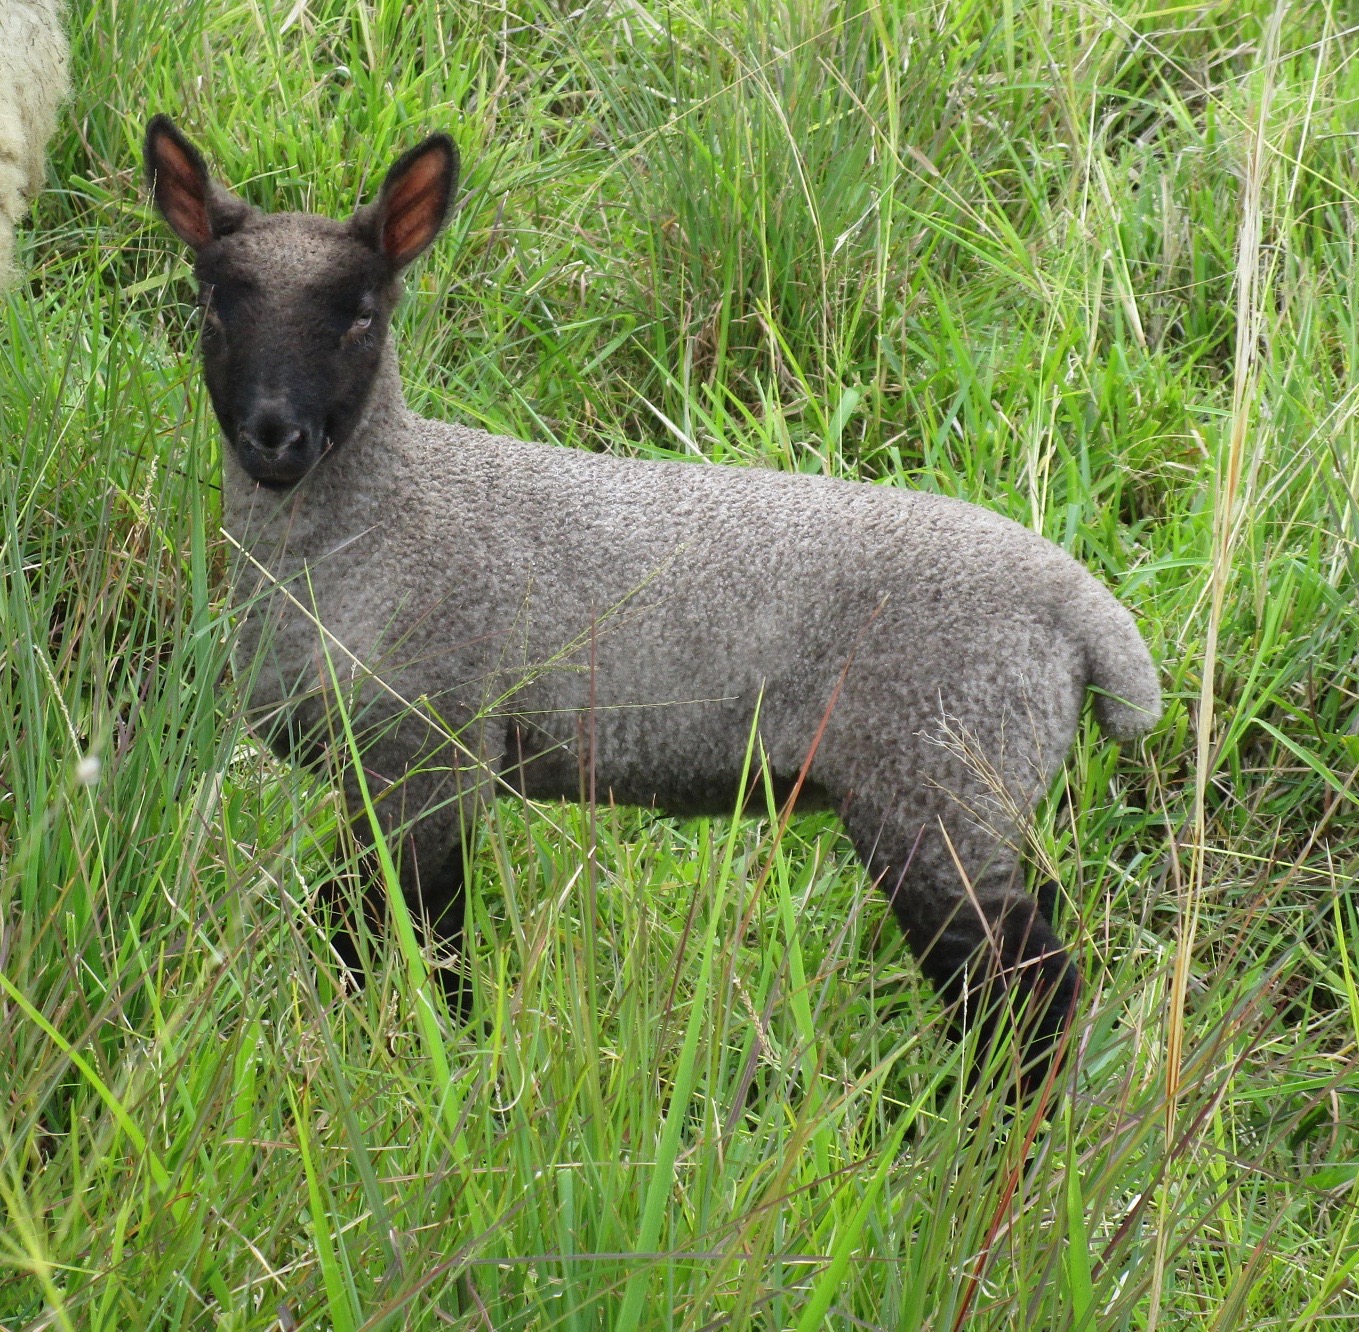 Filleta's ewe at 3 weeks old